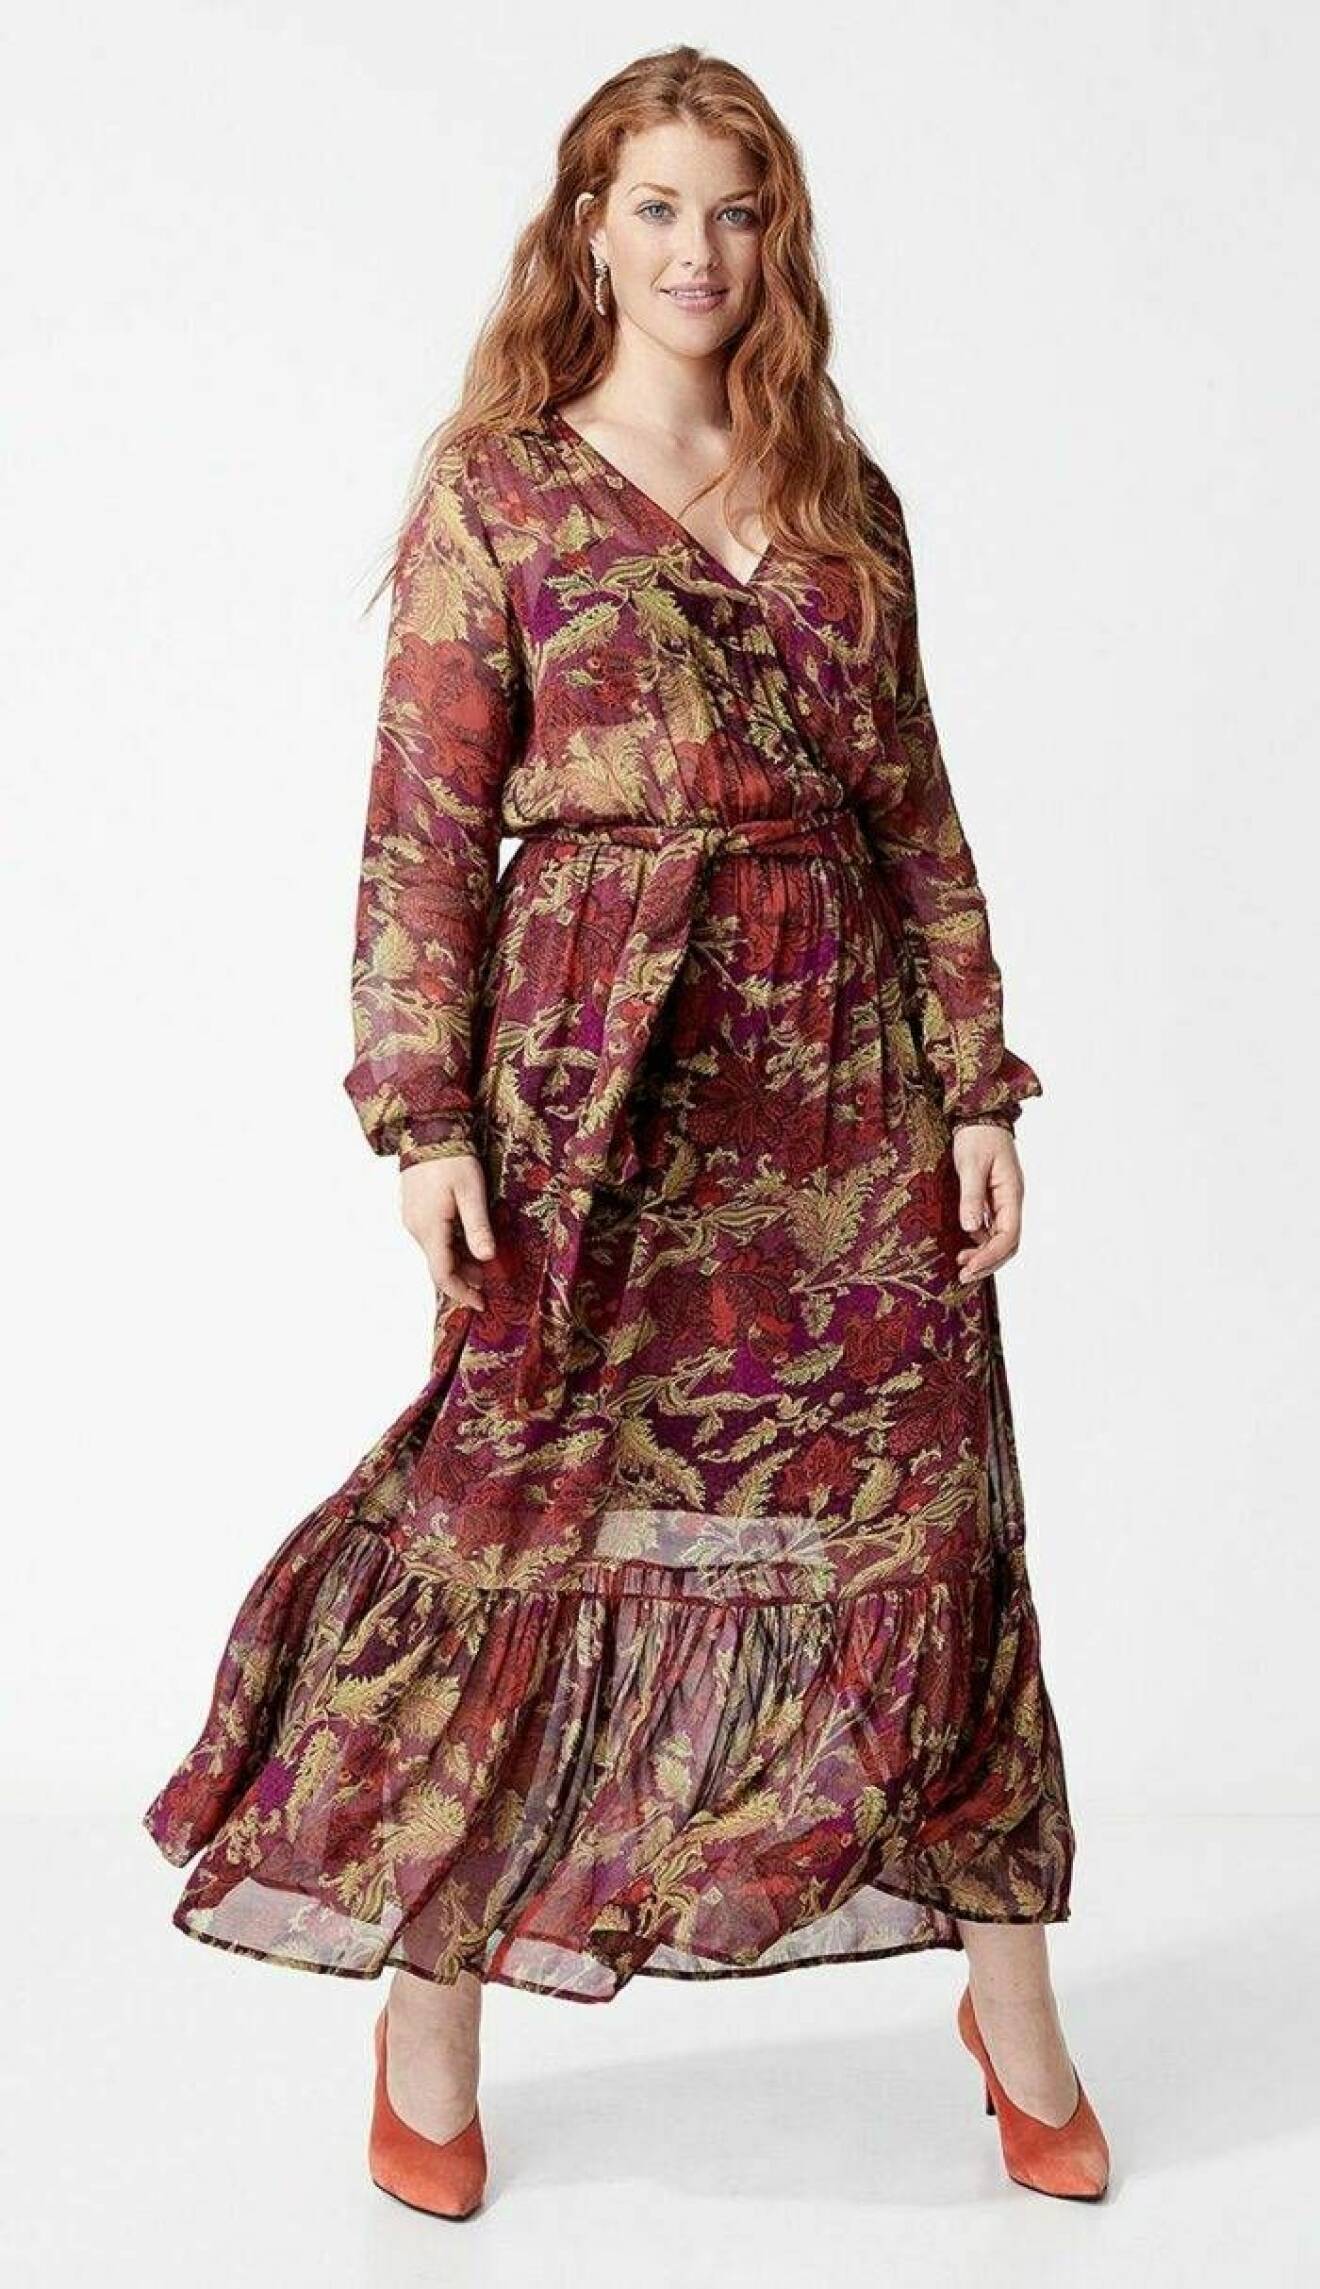 Lång mönstrad klänning med volang från Indiska